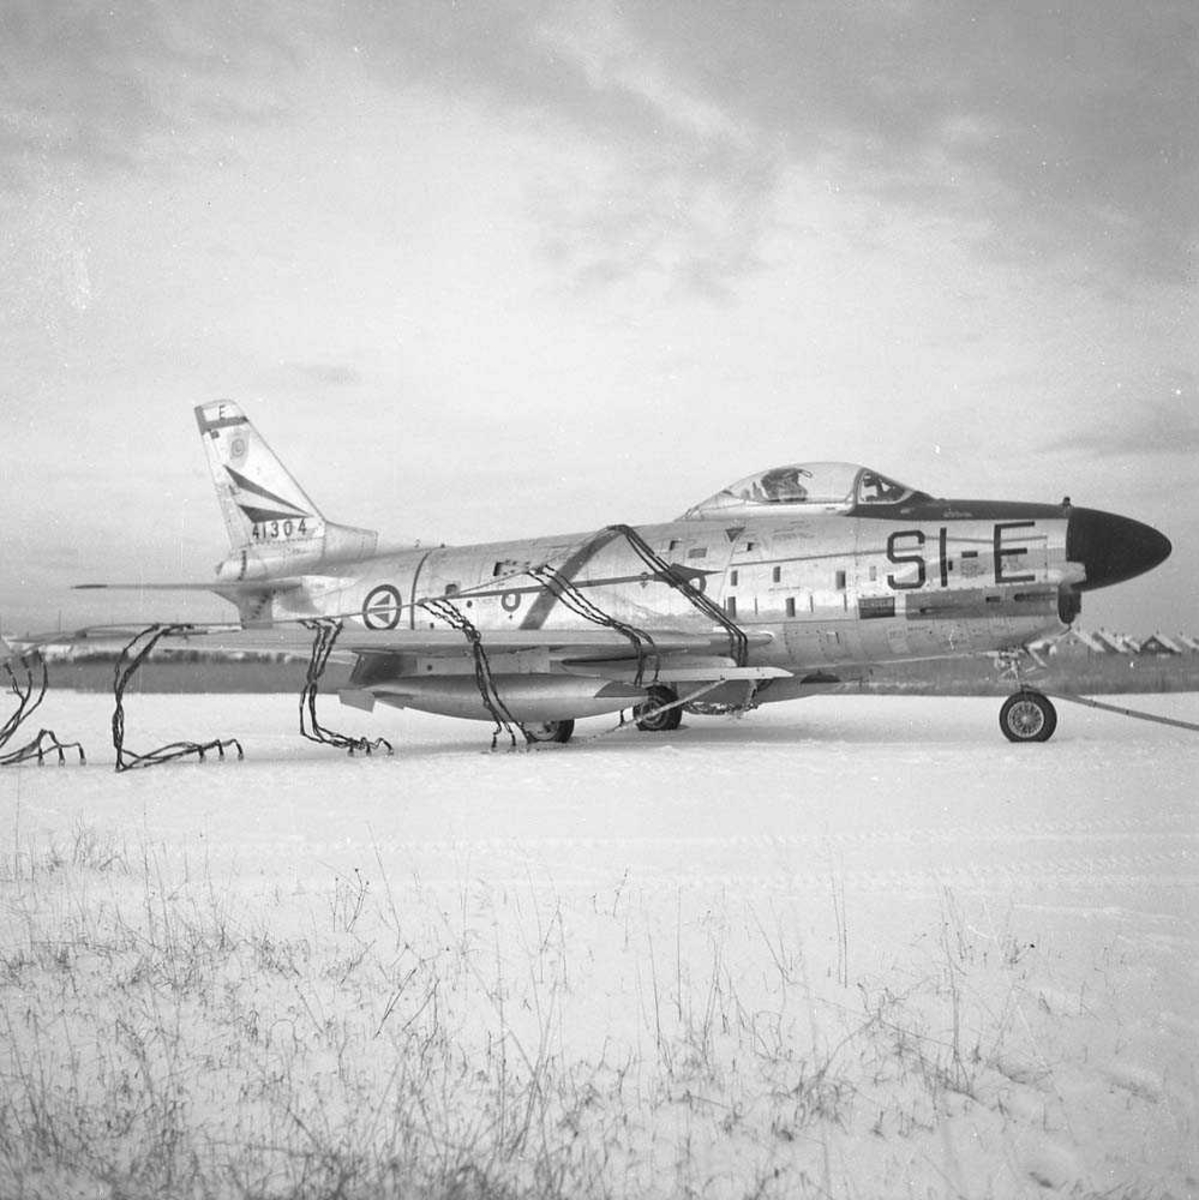 F-86-K, SI-E, tail nr. 54-1304, i nettet på Bodø flystasjon. Flyet tilhørte 339 skvadron, Bardufoss flystasjon.
Se også NL.05060373.